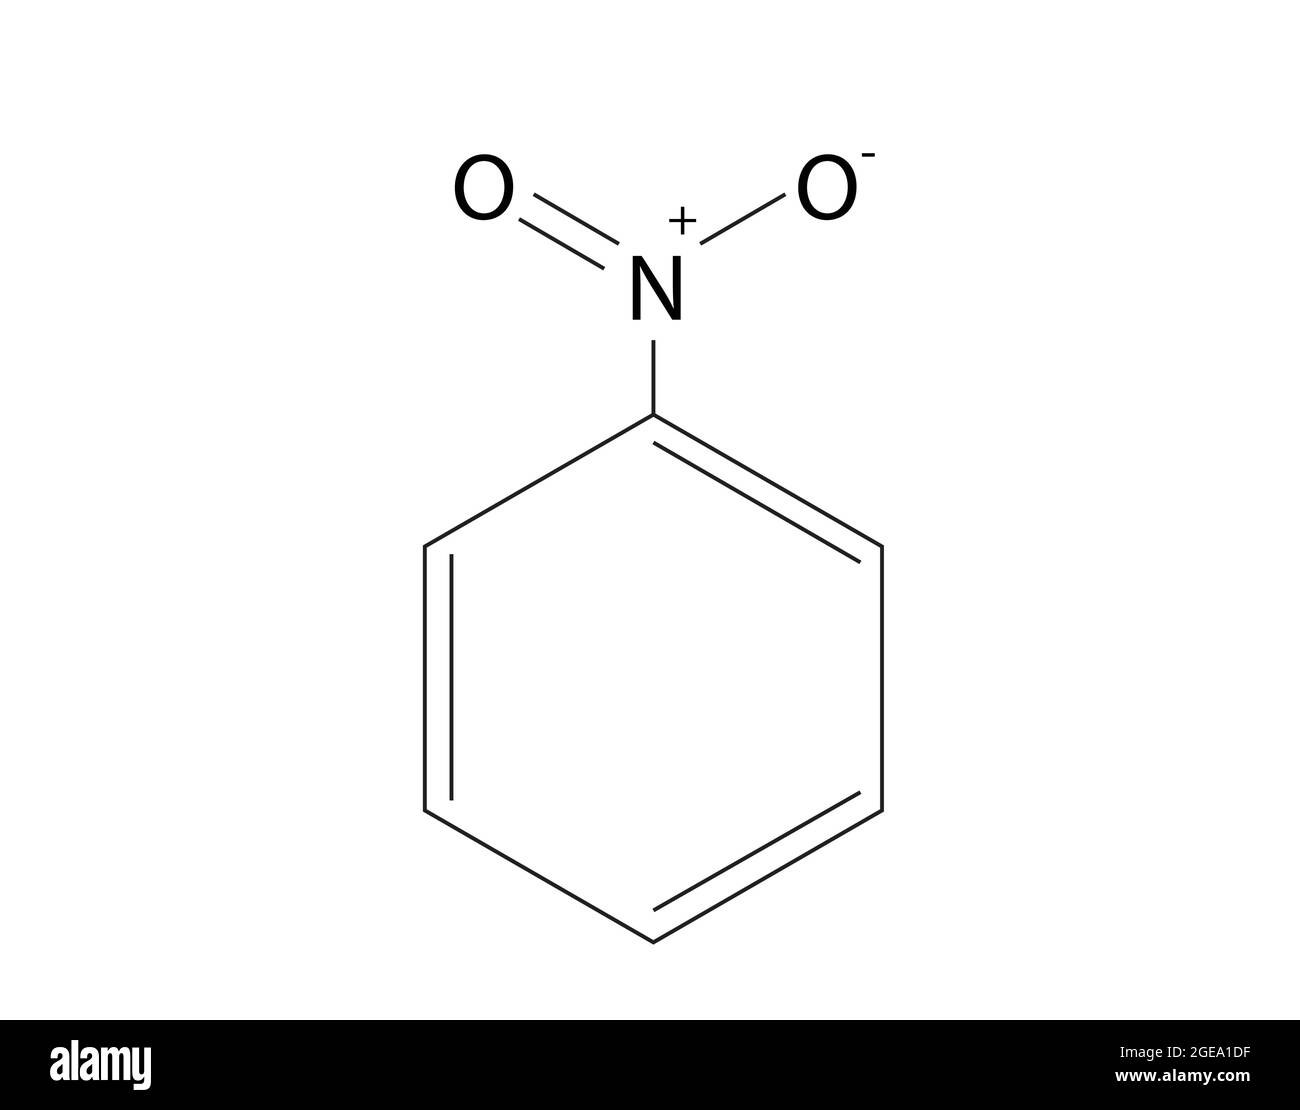 Chemische Struktur von Nitrobenzol, Anatomie von Nitrobenzol, Molekulare Struktur von Nitrobenzol, Chemische Formel von Nitrobenzol, C6H5NO2 Stock Vektor